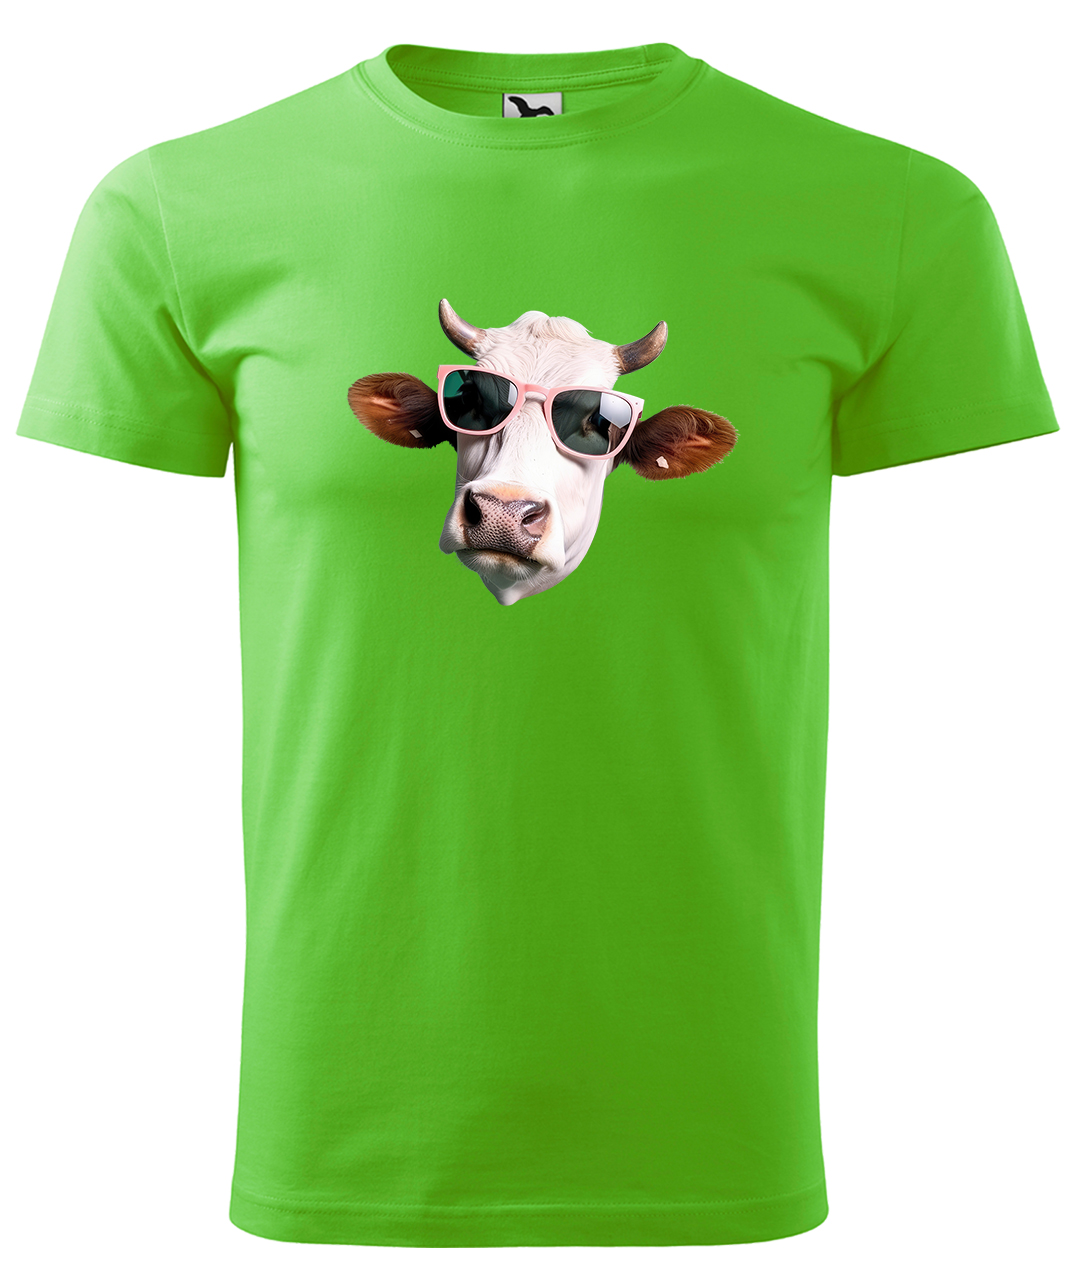 Dětské tričko s krávou - Kráva v brýlích Velikost: 4 roky / 110 cm, Barva: Apple Green (92), Délka rukávu: Krátký rukáv